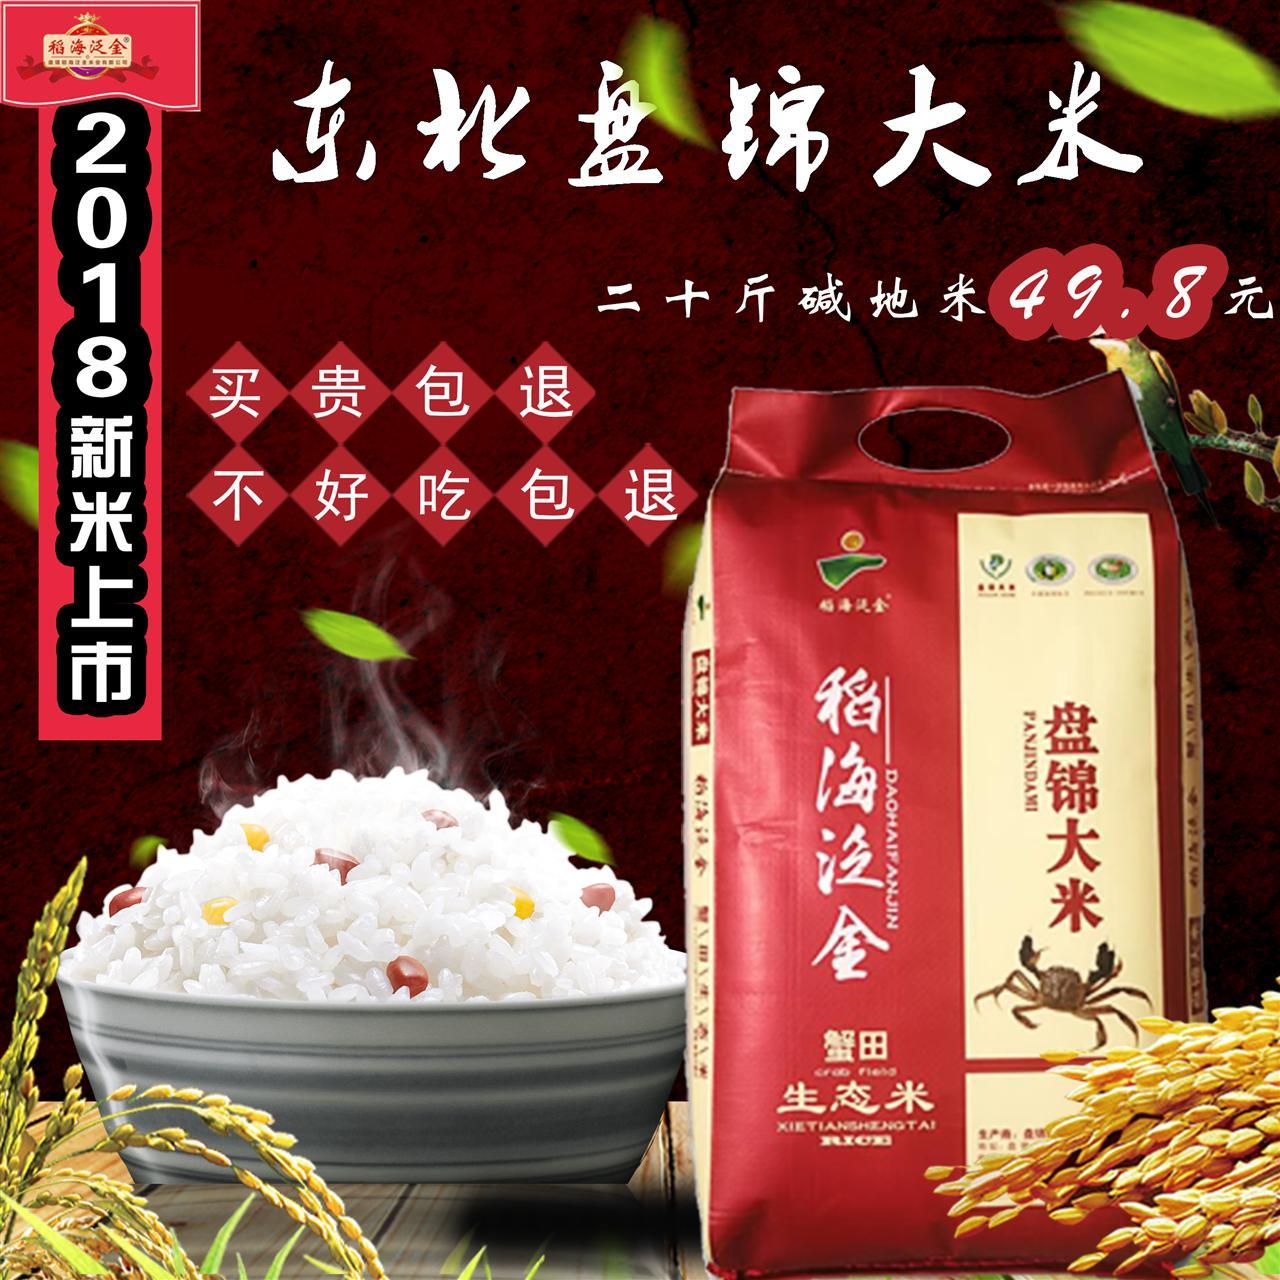 现磨东北大米盘锦大米1-20斤装2018年碱地米,珍珠米,蟹田大米